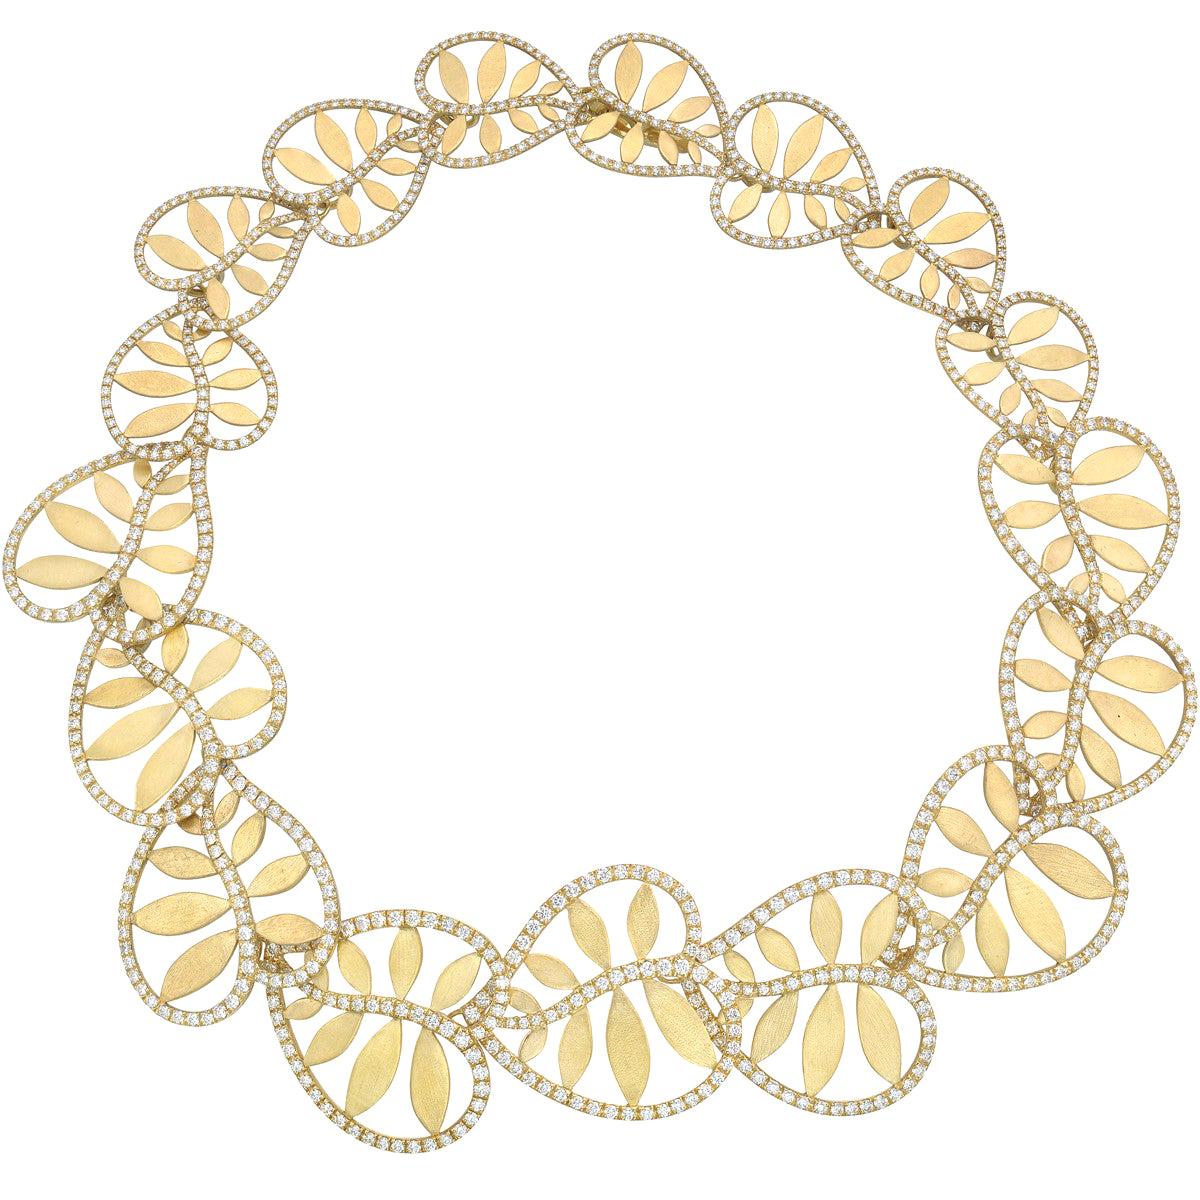 Tiffany & Co. 18 Karat Yellow Gold and Diamond "Villa Paloma" Necklace